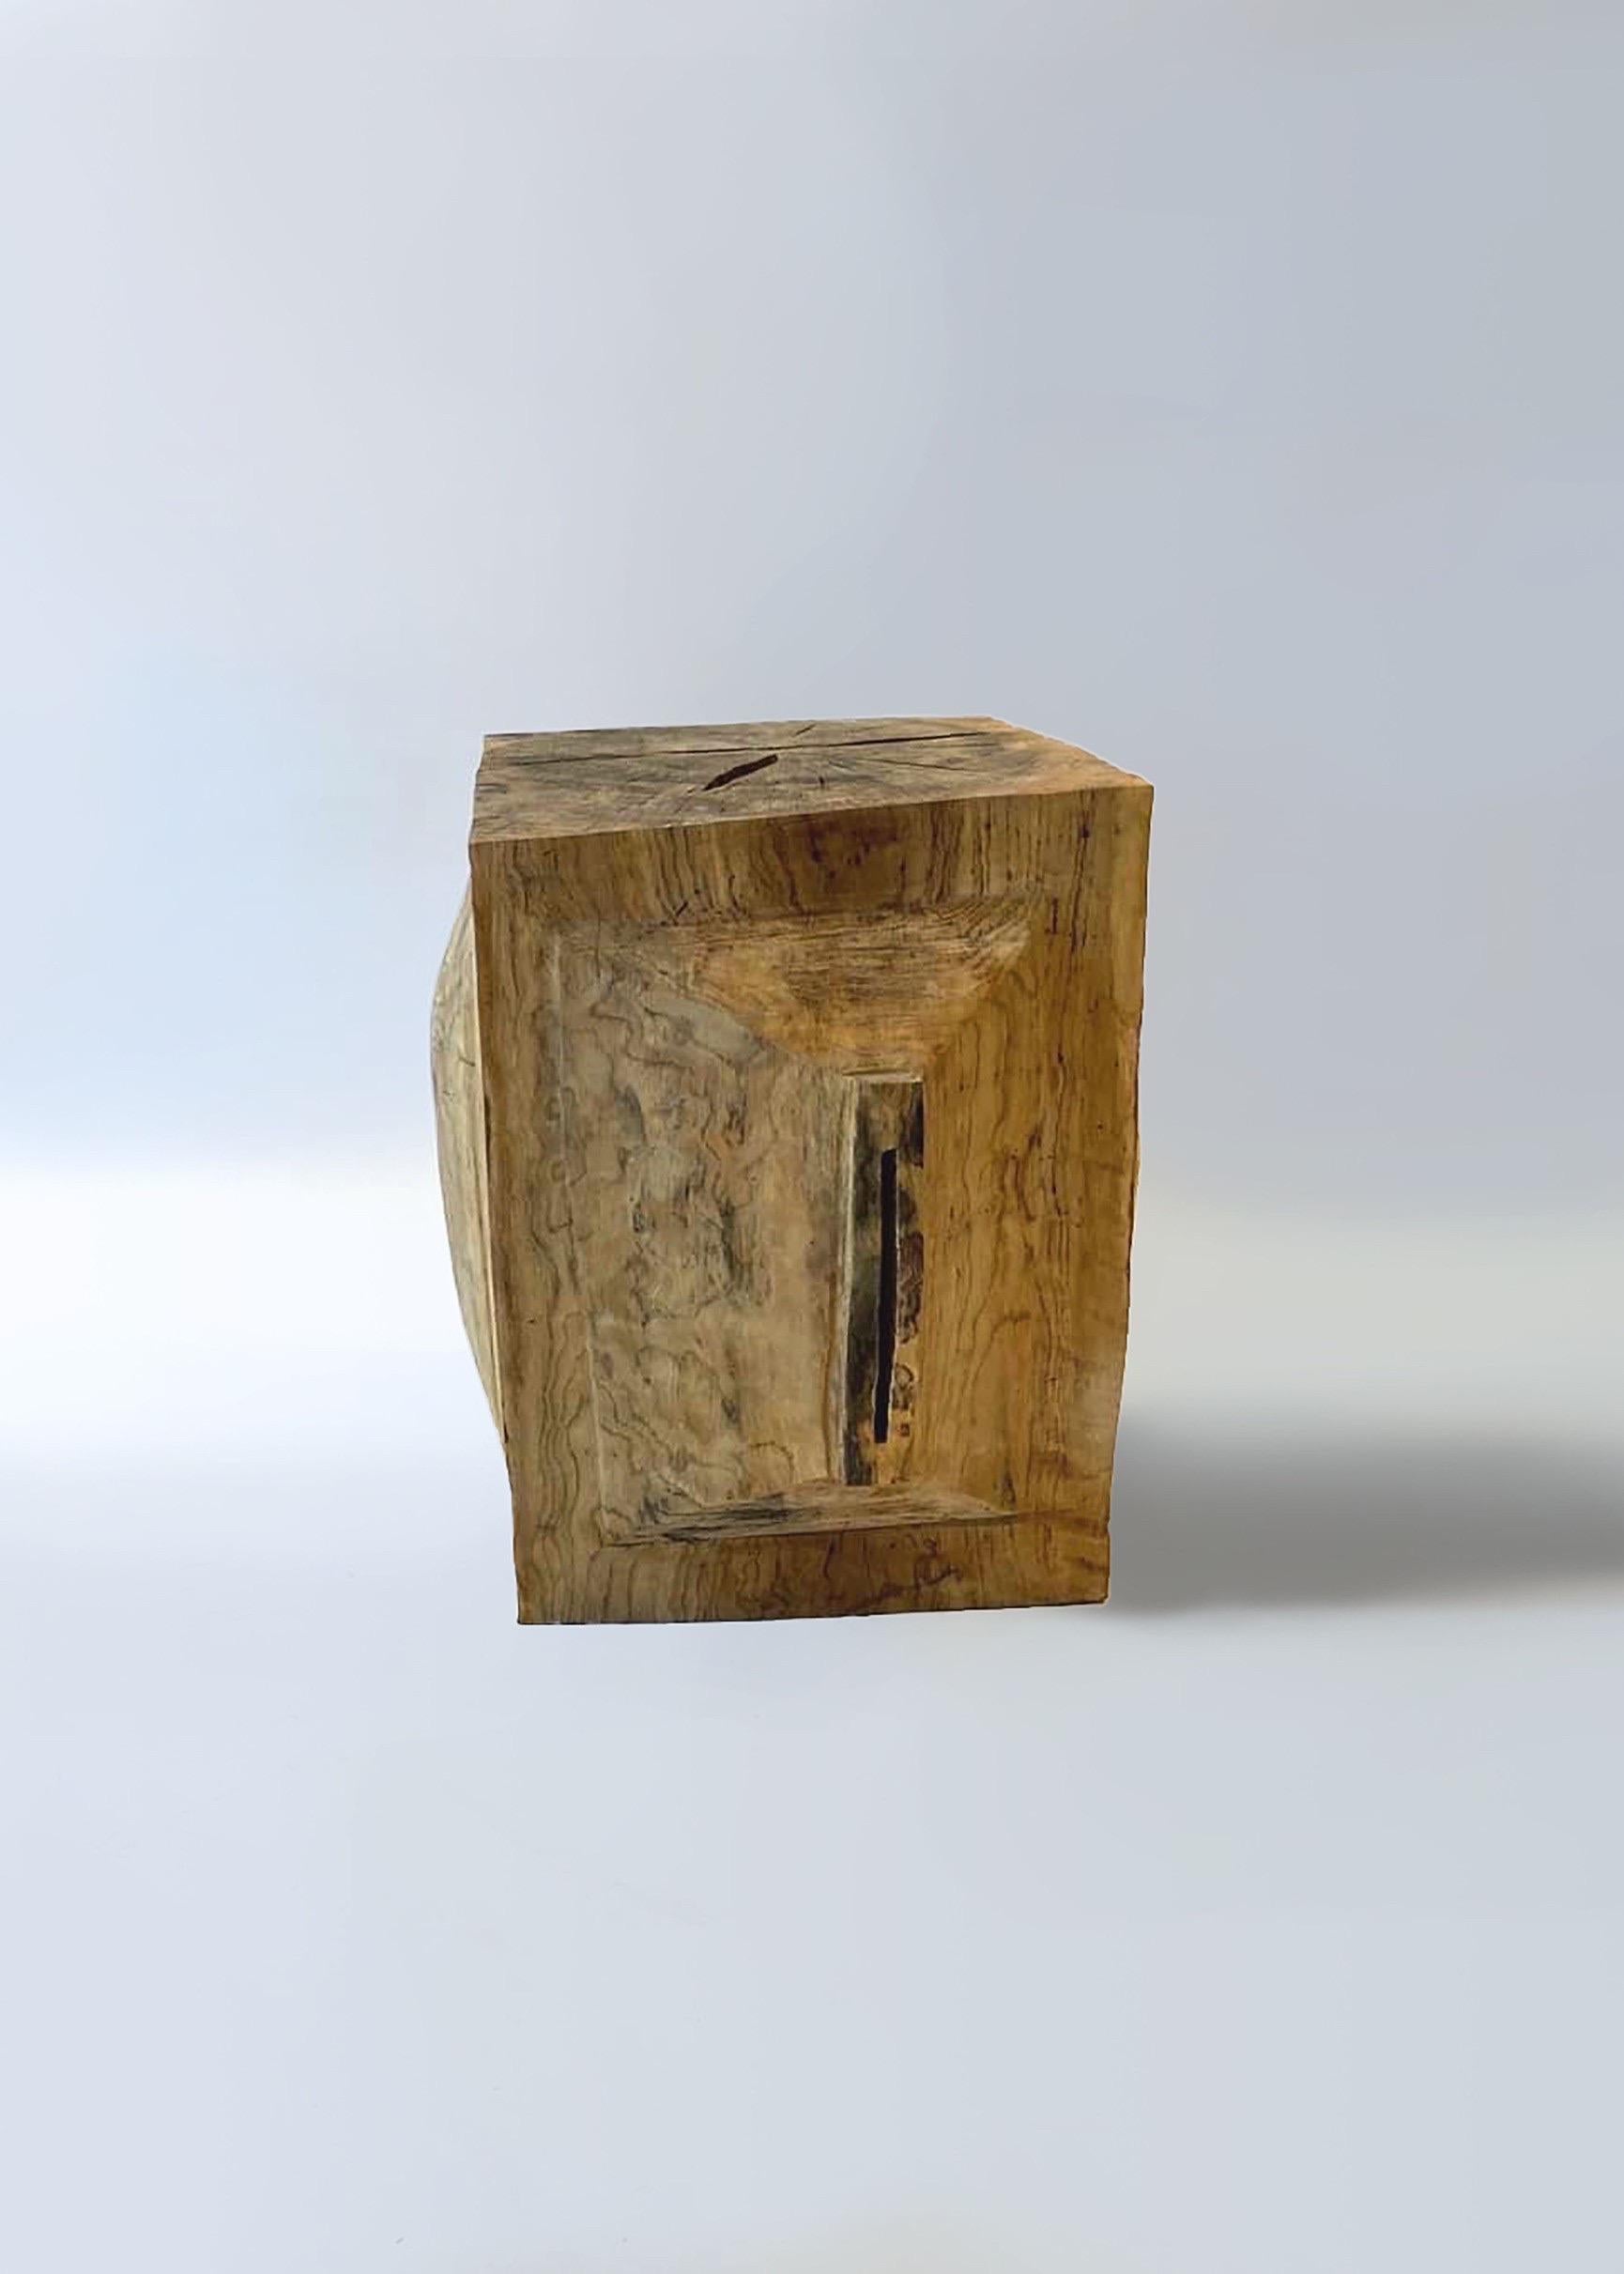 Nom : Robot
Tabouret sculptural par Zogei meubles sculptés
Matériel : Quercus serrata
Cette œuvre est taillée dans le bois avec des sortes de tronçonneuses.
La plupart des bois utilisés pour les œuvres de Nishimura ne peuvent servir à rien, ces